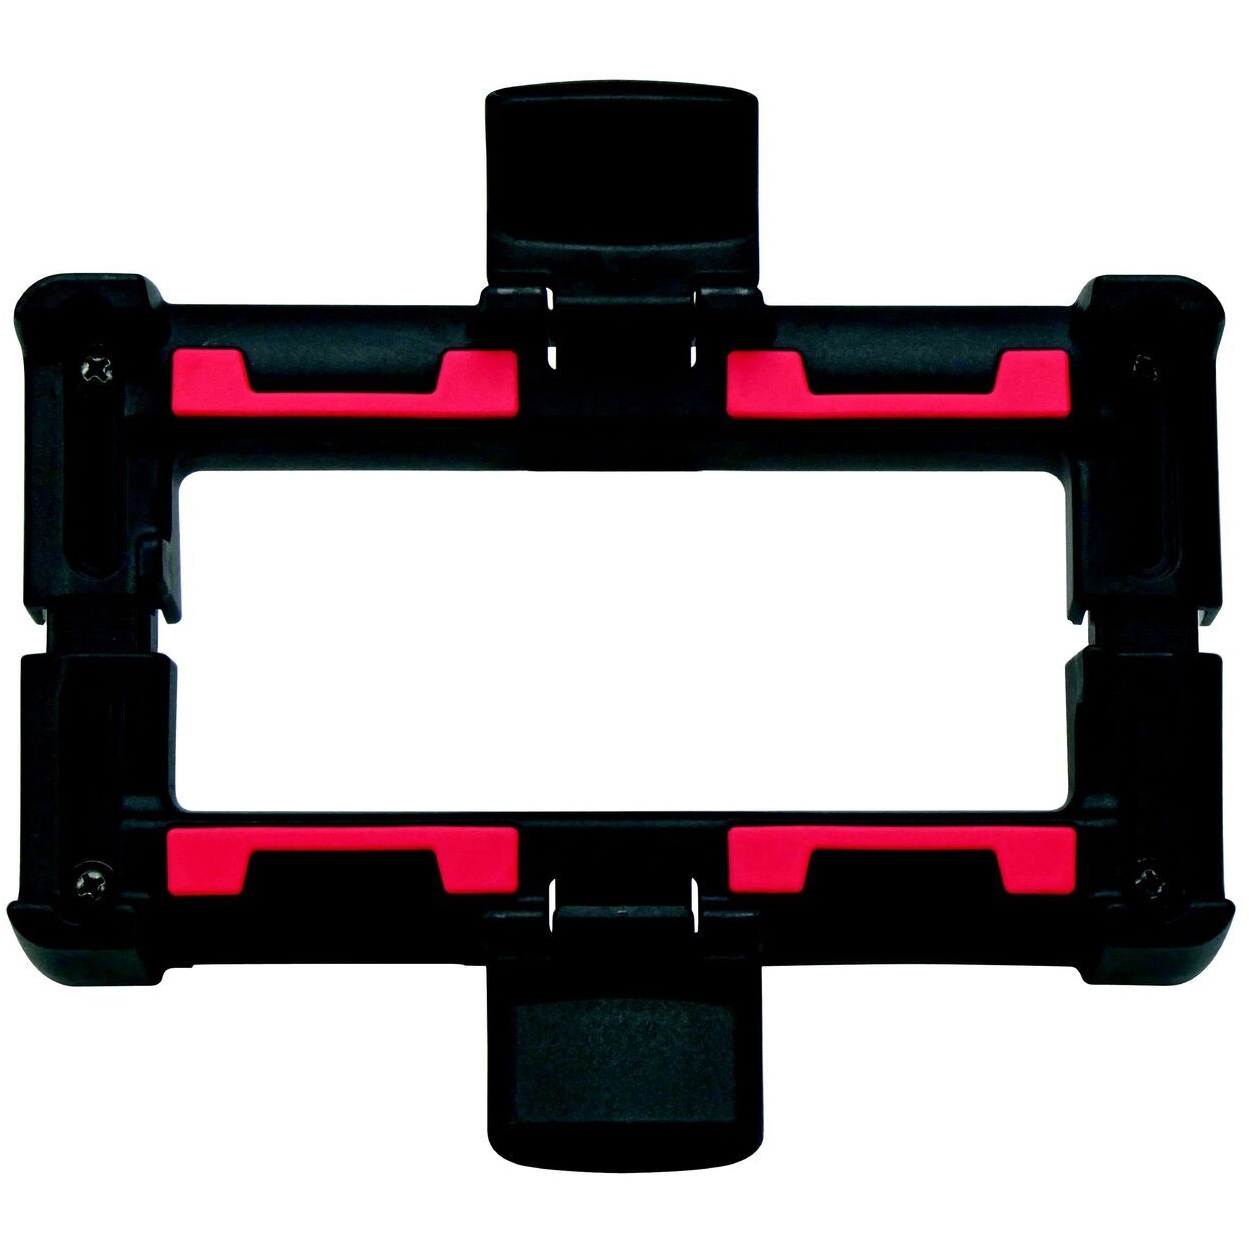 Produktbild von Vaude UniKlip System für Gepäckträger - schwarz